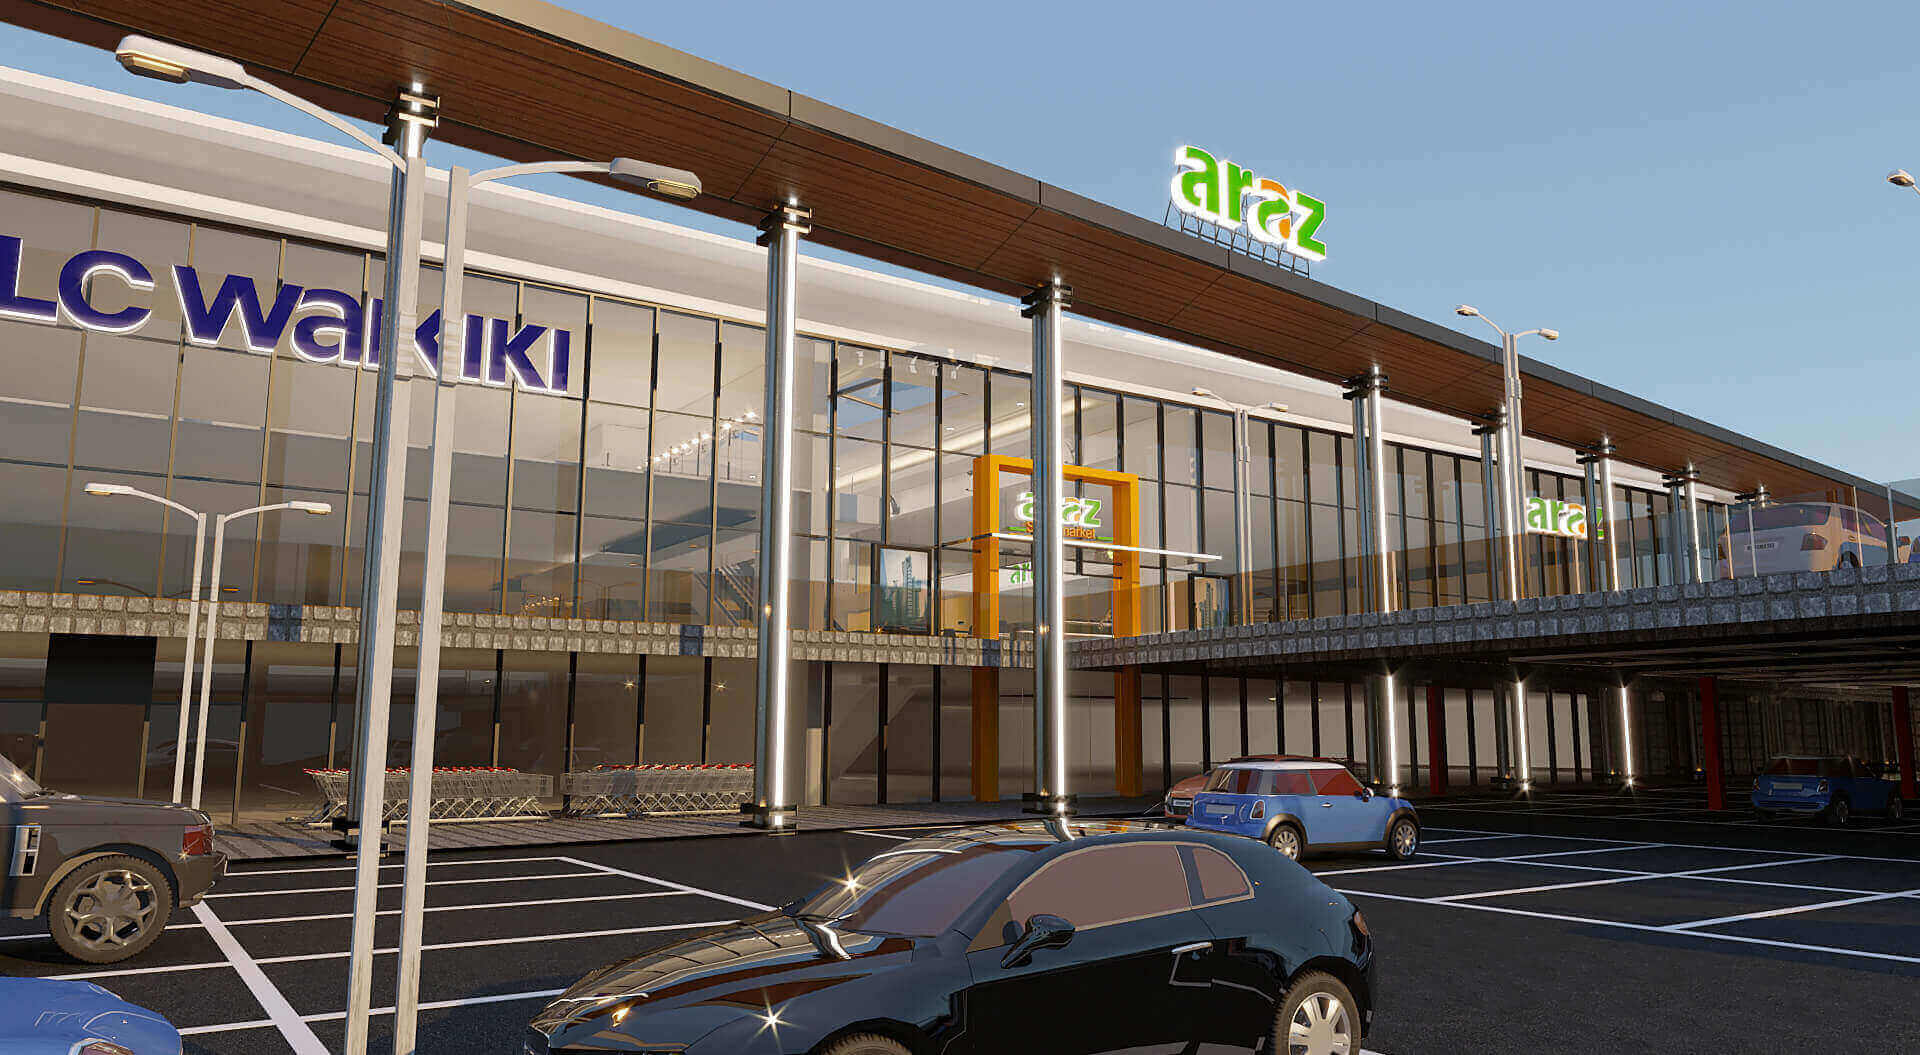 Araz Shopping Mall Azerbaijan, Innovative Architecture, Retail Mall, Facade Design - CampbellRigg Agency